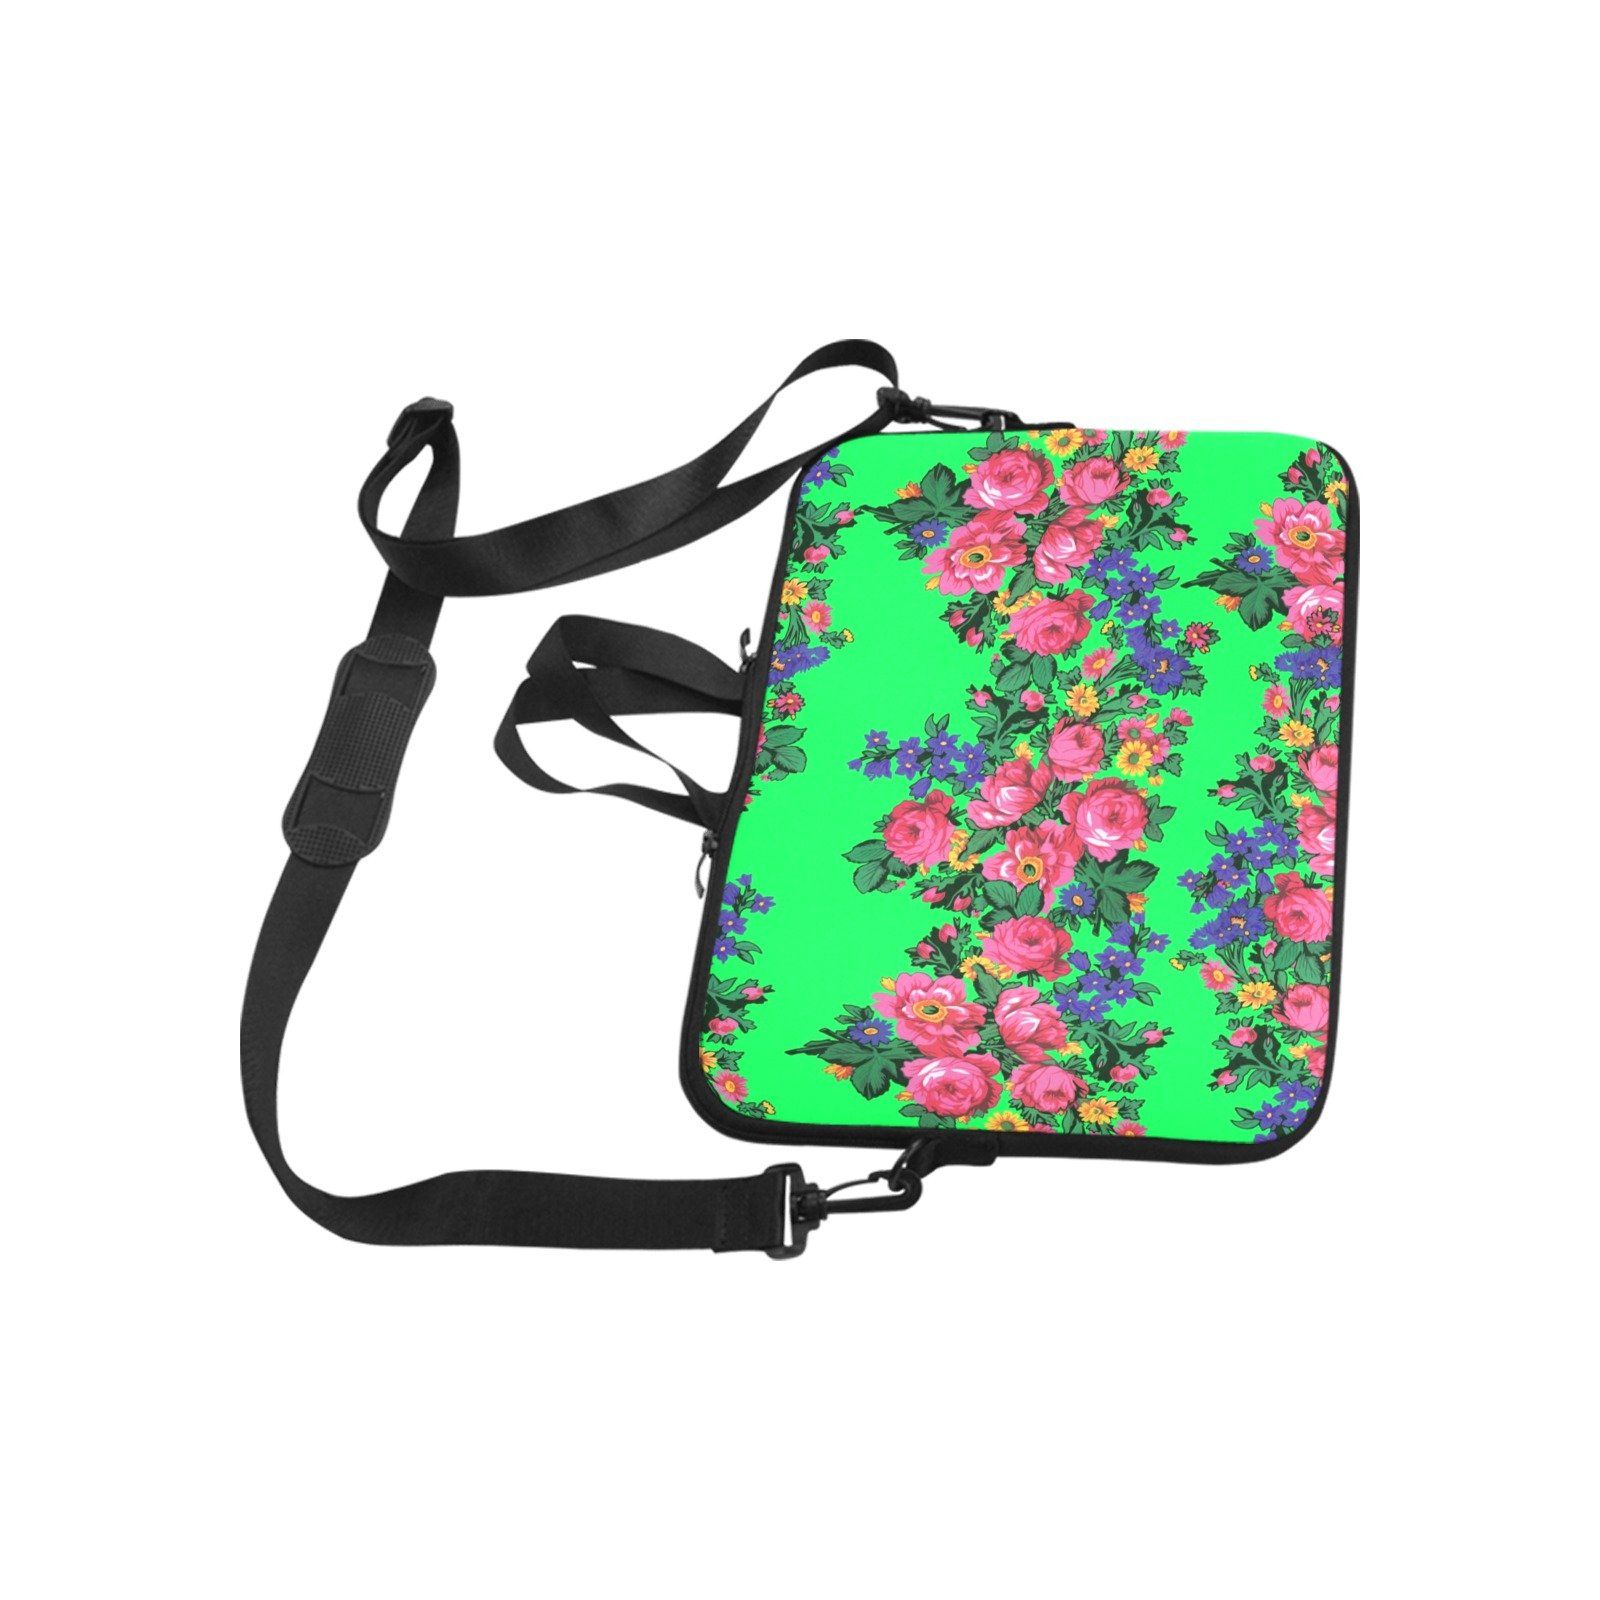 Kokum's Revenge Green Laptop Handbags 11" bag e-joyer 